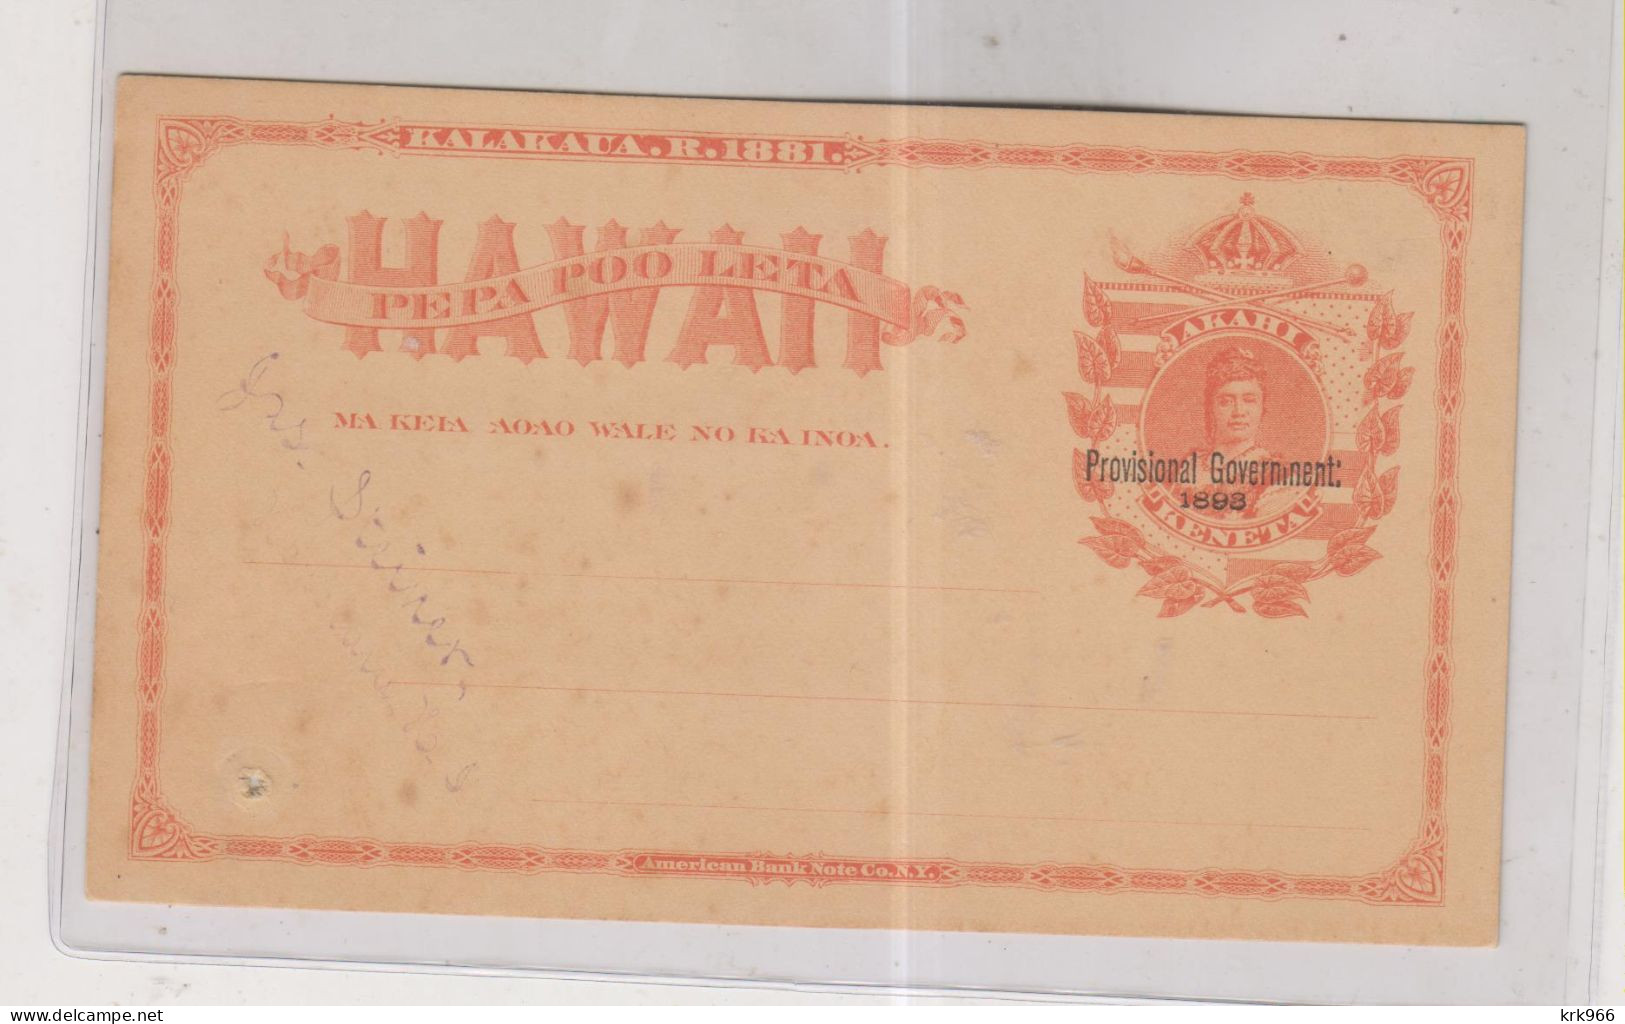 HAWAII Postal Stationery Unused - Hawai